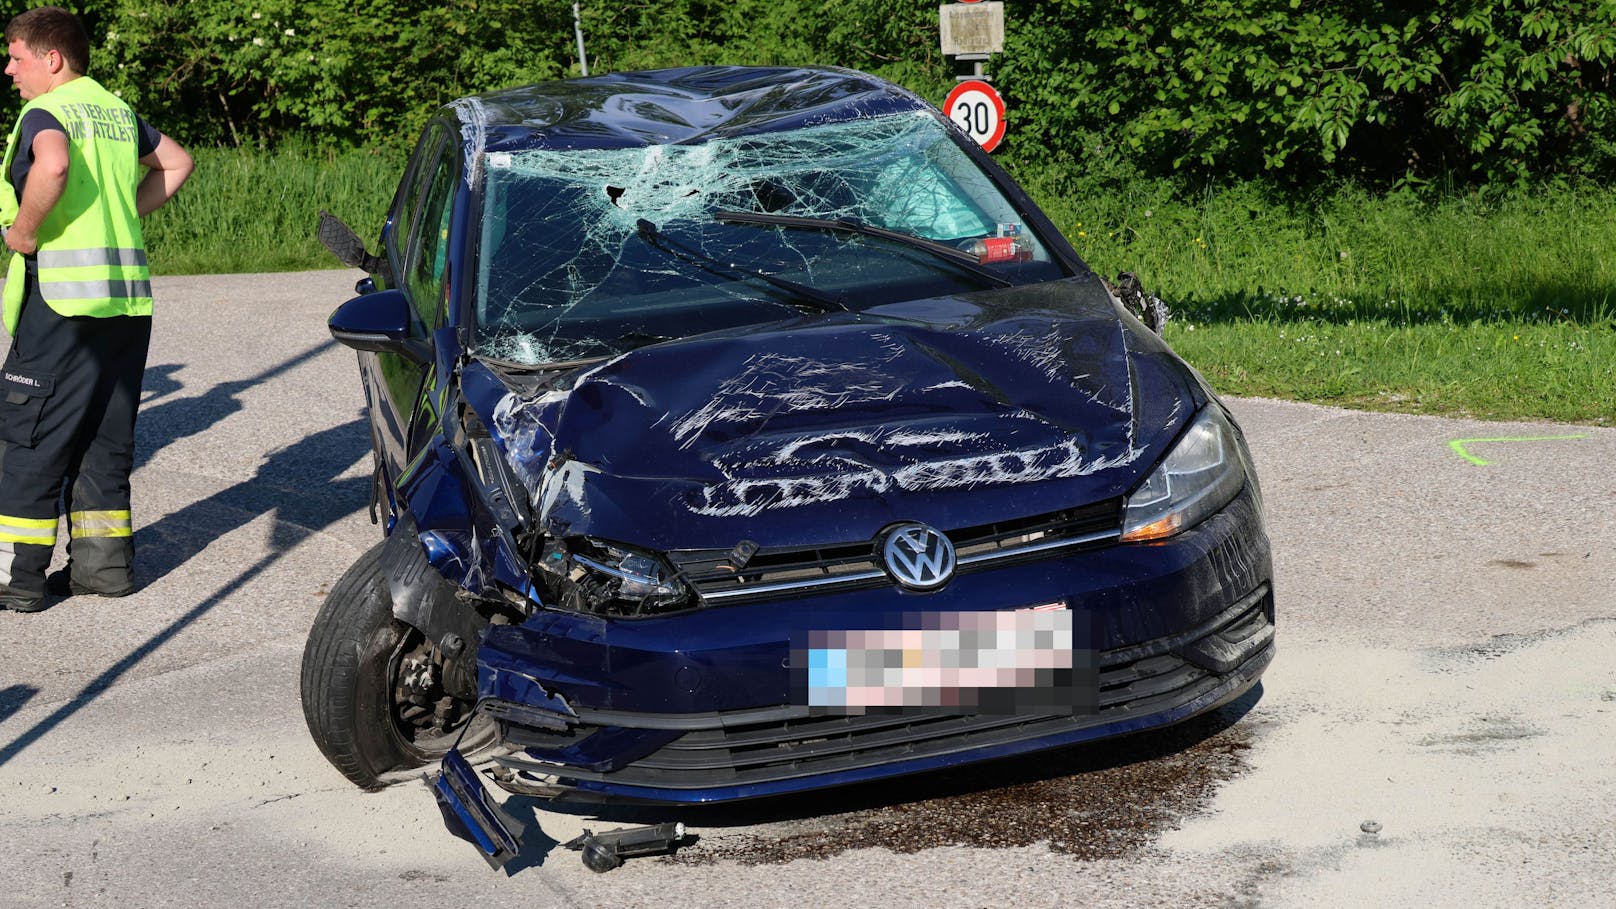 VW-Fahrerin verliert Kontrolle und überschlägt sich